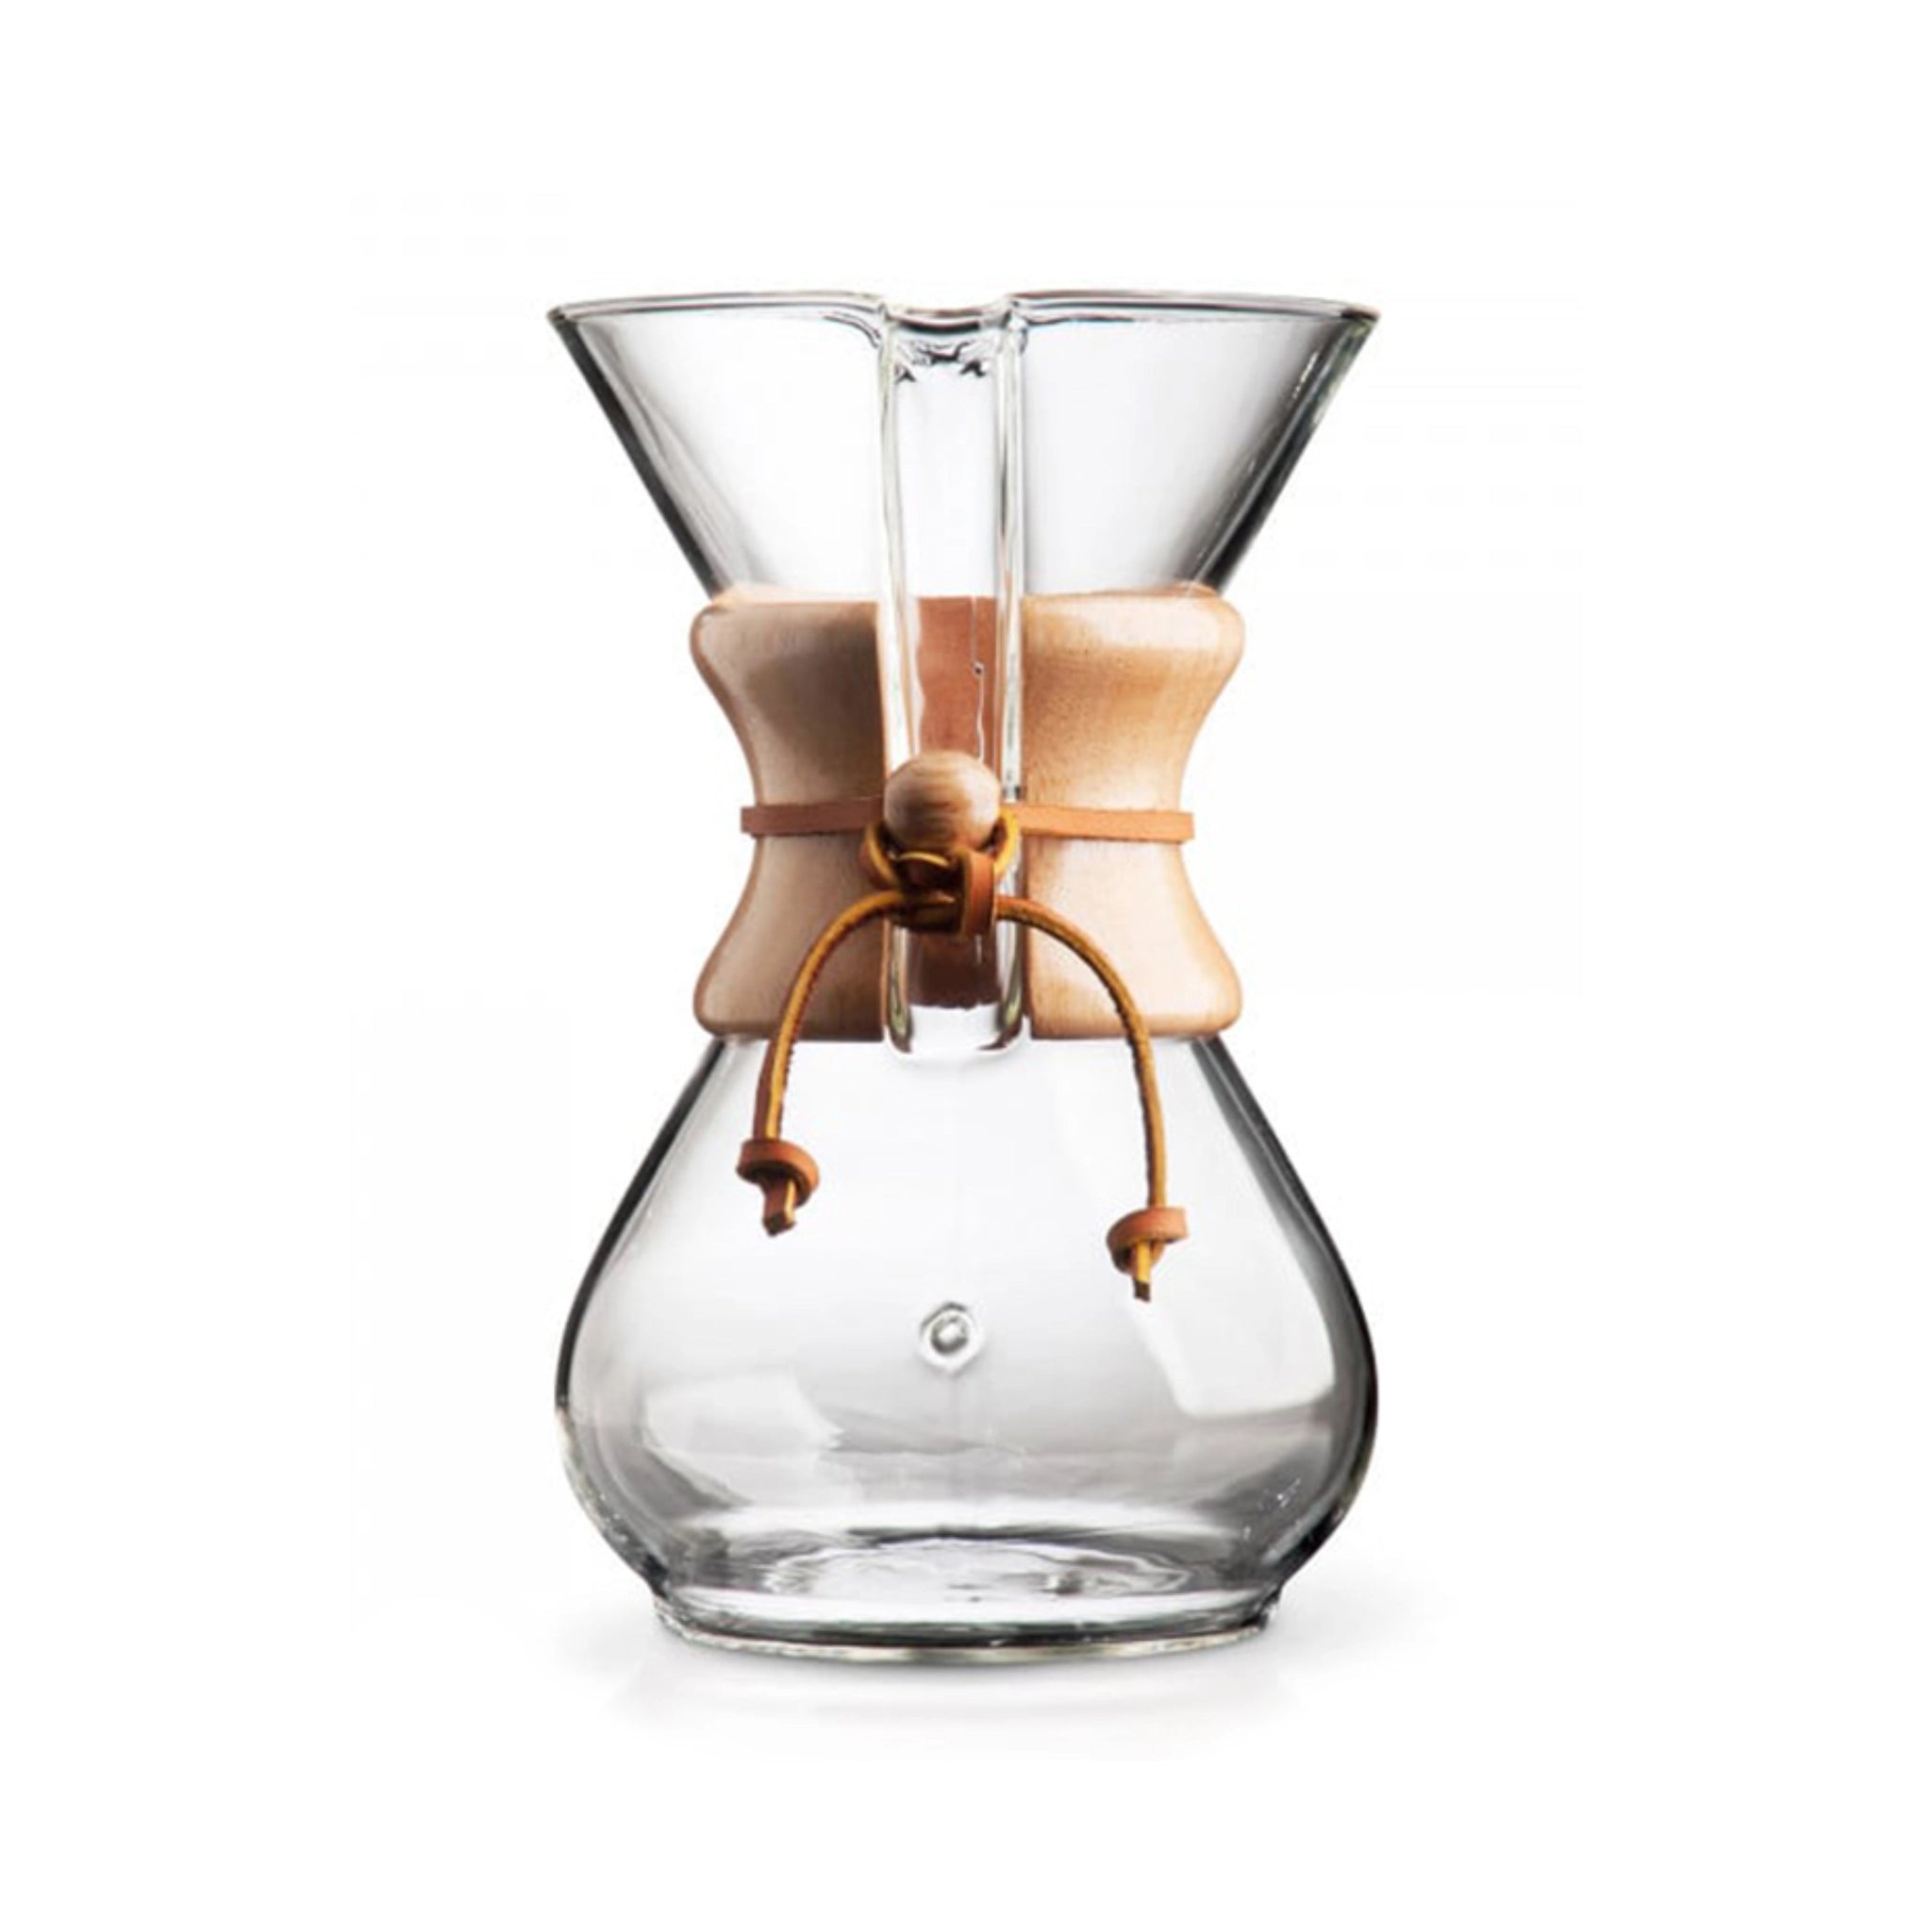 Produktbild der Chemex Glaskaraffe vor weißem Hintergrund (Hero Shot). Das Design erinnert an eine Sanduhr die oben offen ist. Am schmalen Teil ist eine Holumanschette angebracht, die mit einem Lederband gesichert ist. Version für 6 Tassen Kaffee.